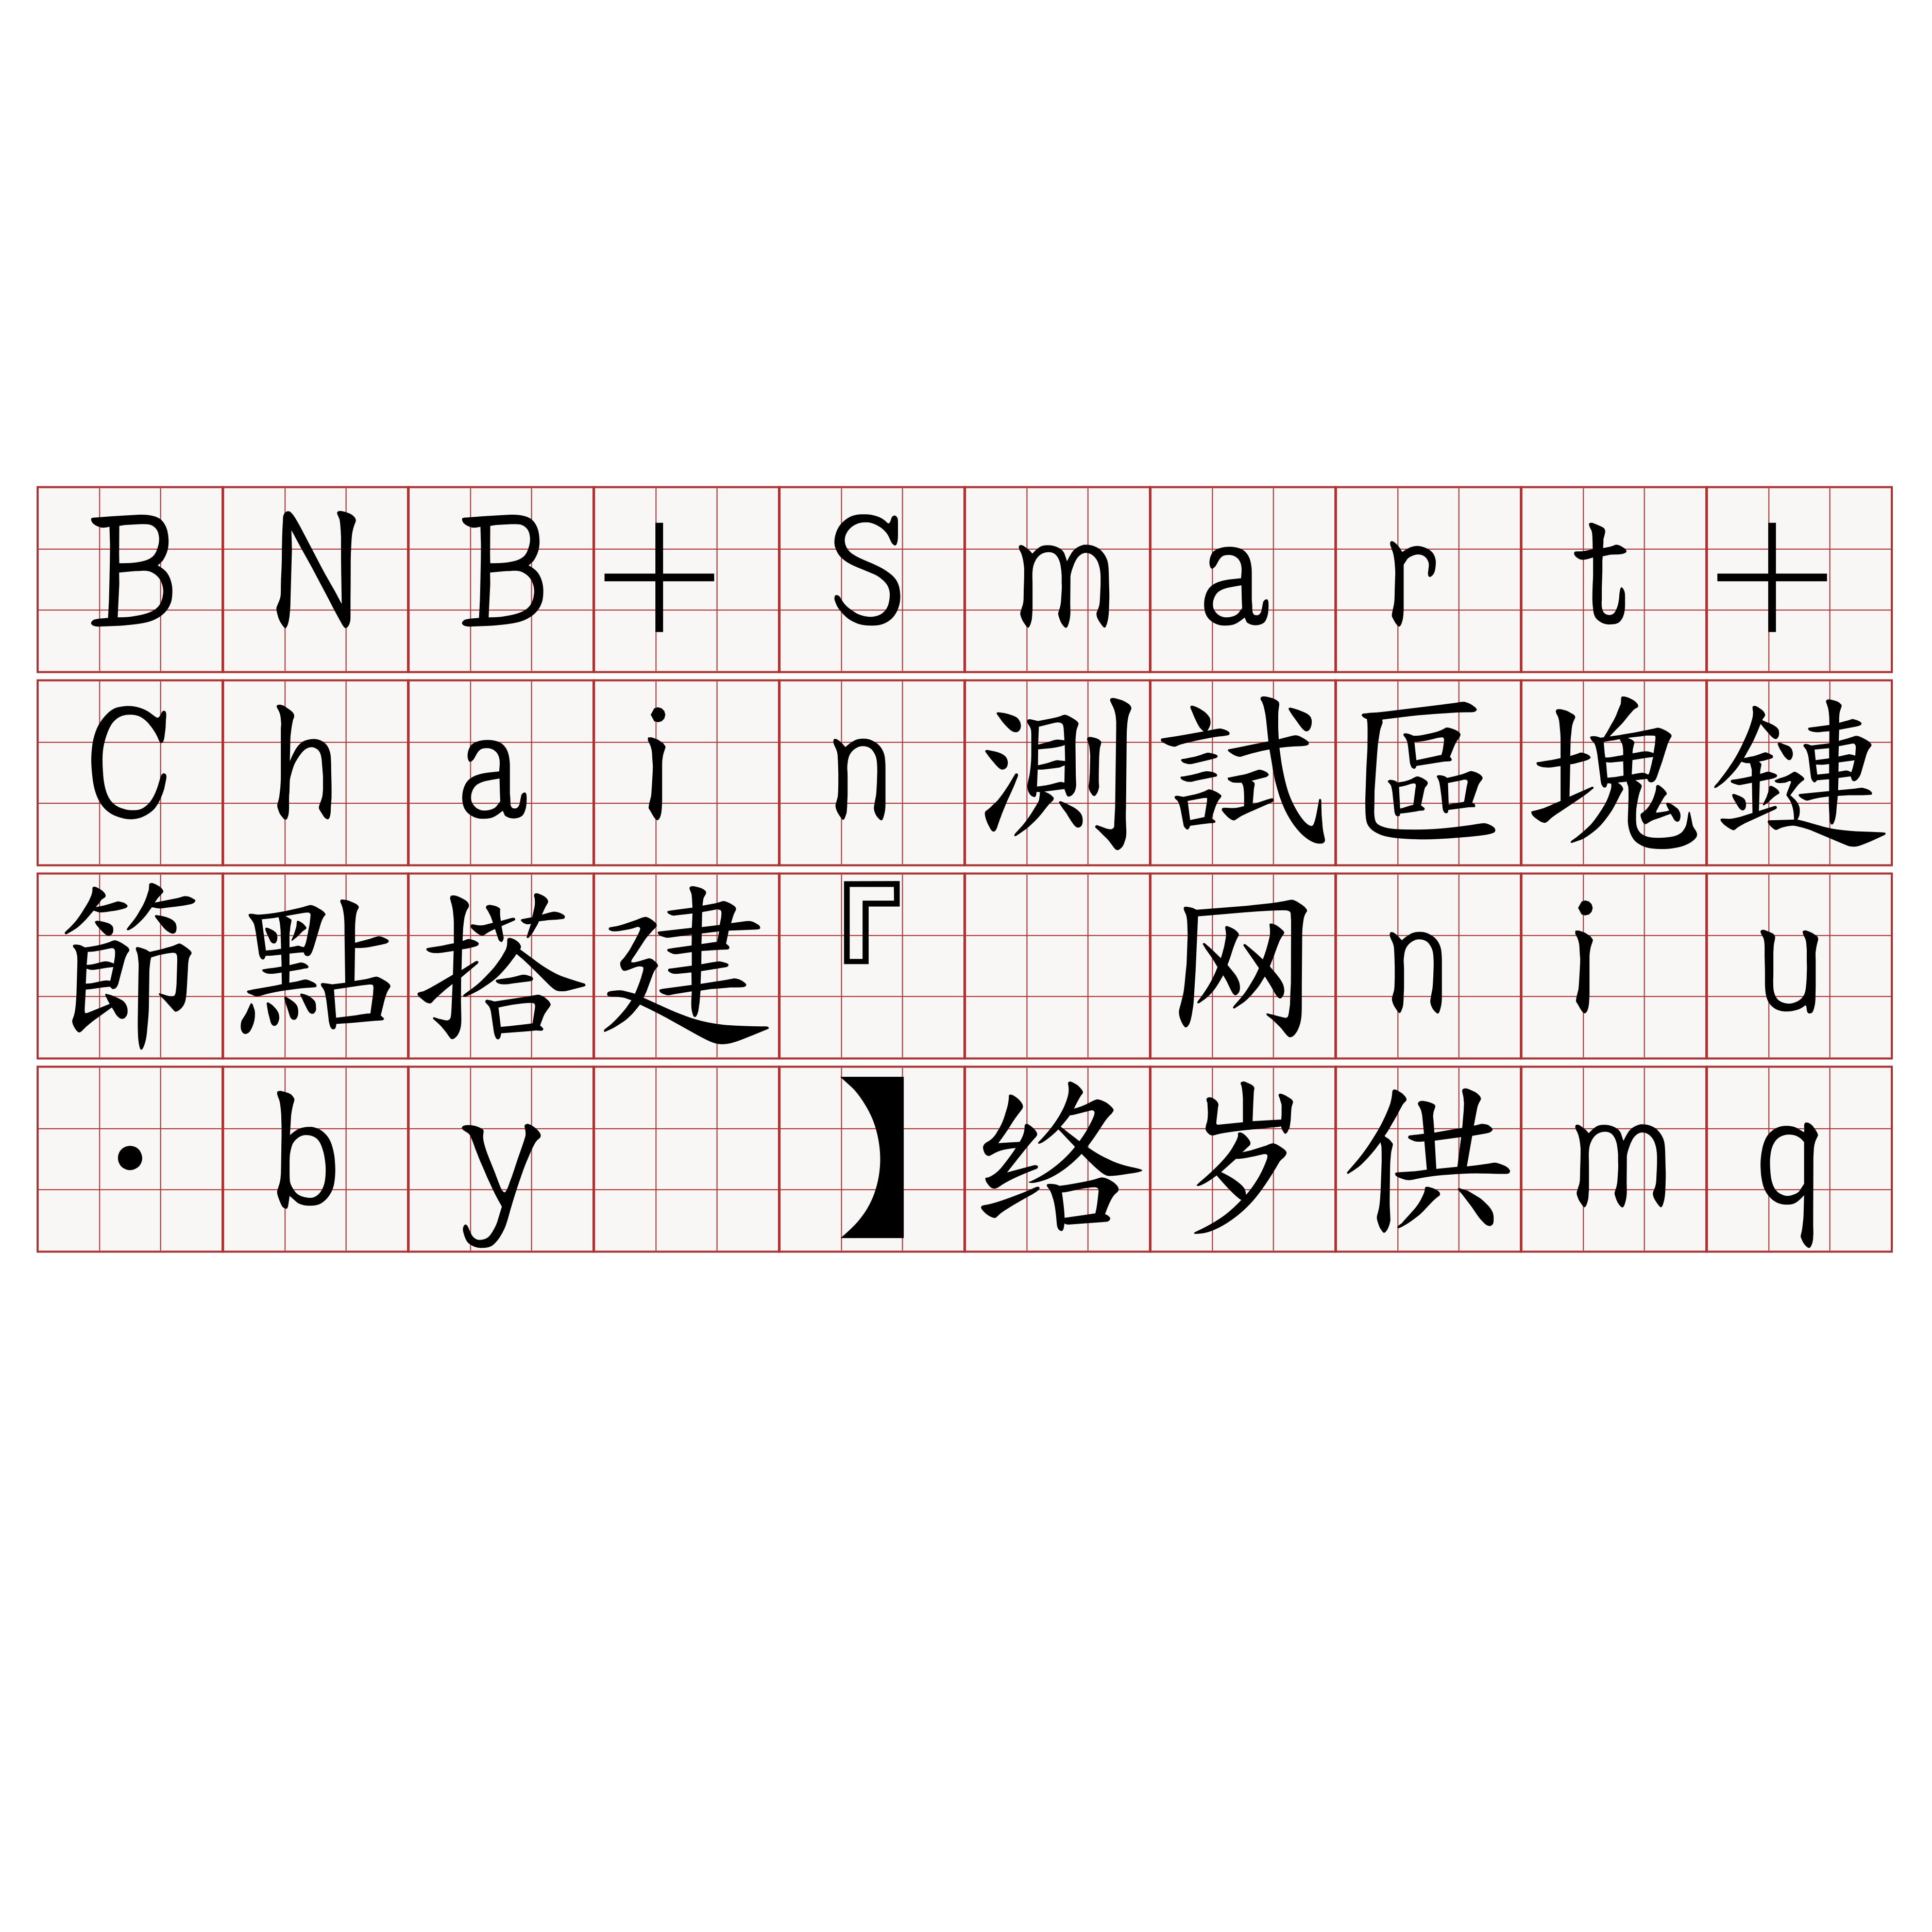 BNB+Smart+Chain測試區塊鏈節點搭建『🍀官网niu·by🍀』】络岁供mq